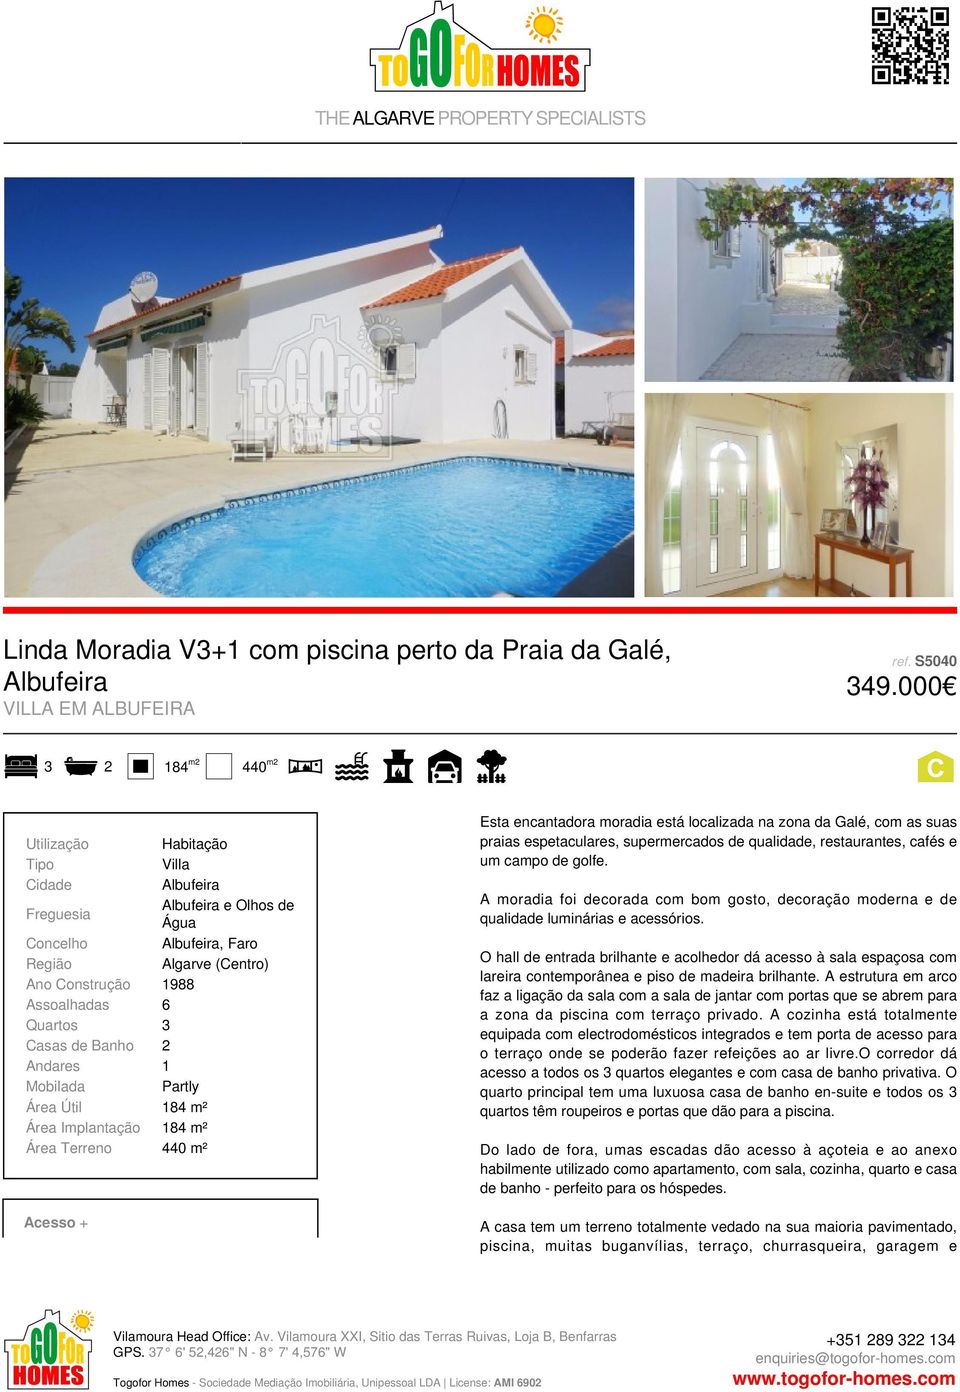 Área Terreno 440 m² Acesso + Habitação Villa Albufeira Albufeira e Olhos de Água Albufeira, Faro Algarve (Centro) Esta encantadora moradia está localizada na zona da Galé, com as suas praias